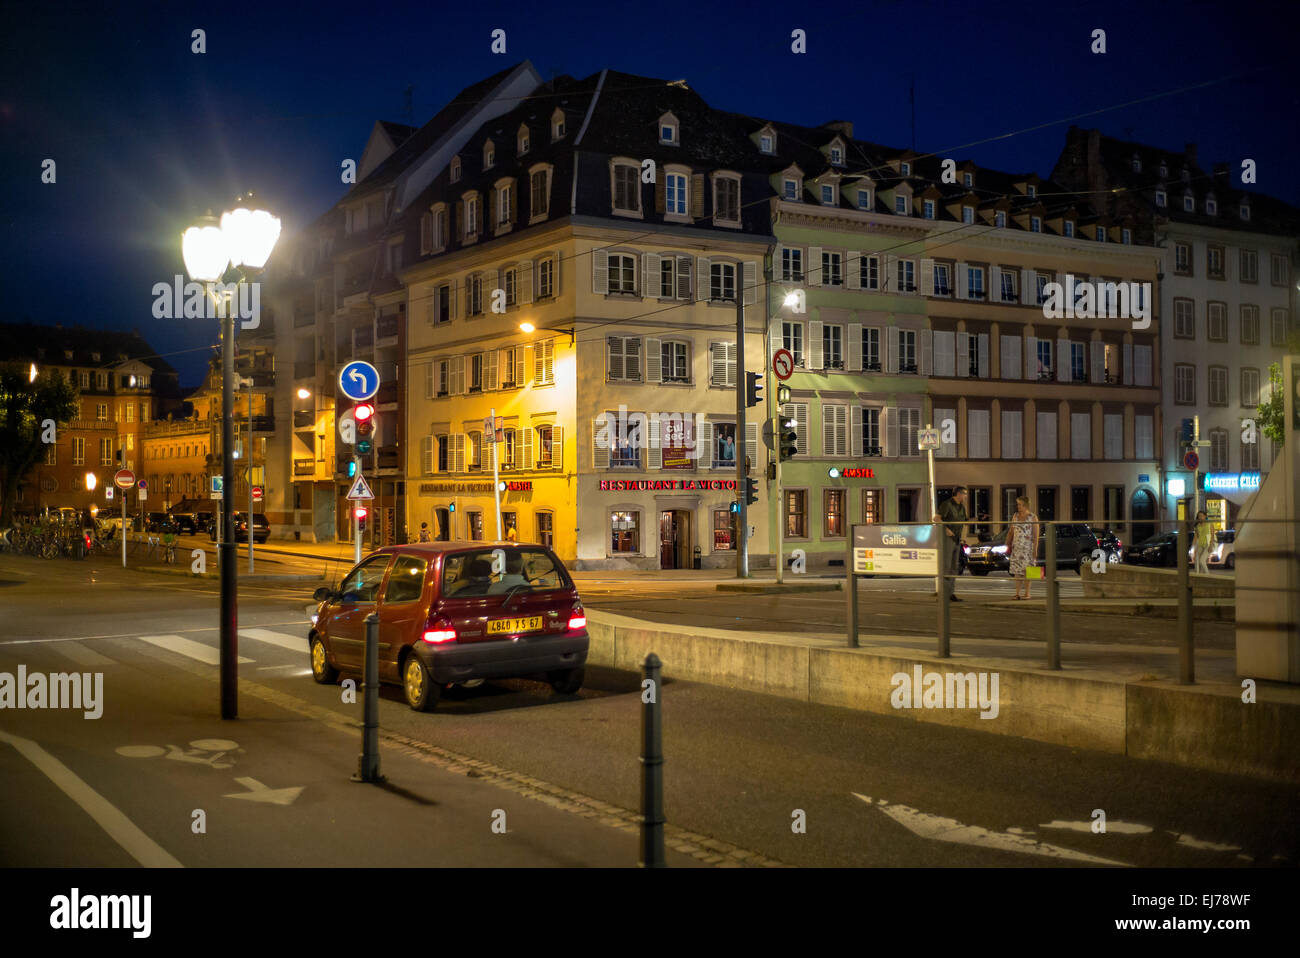 Passage à niveau de la rue, la voiture, les feux de circulation, Quai des Bateliers quay la nuit Strasbourg Alsace France Europe Banque D'Images